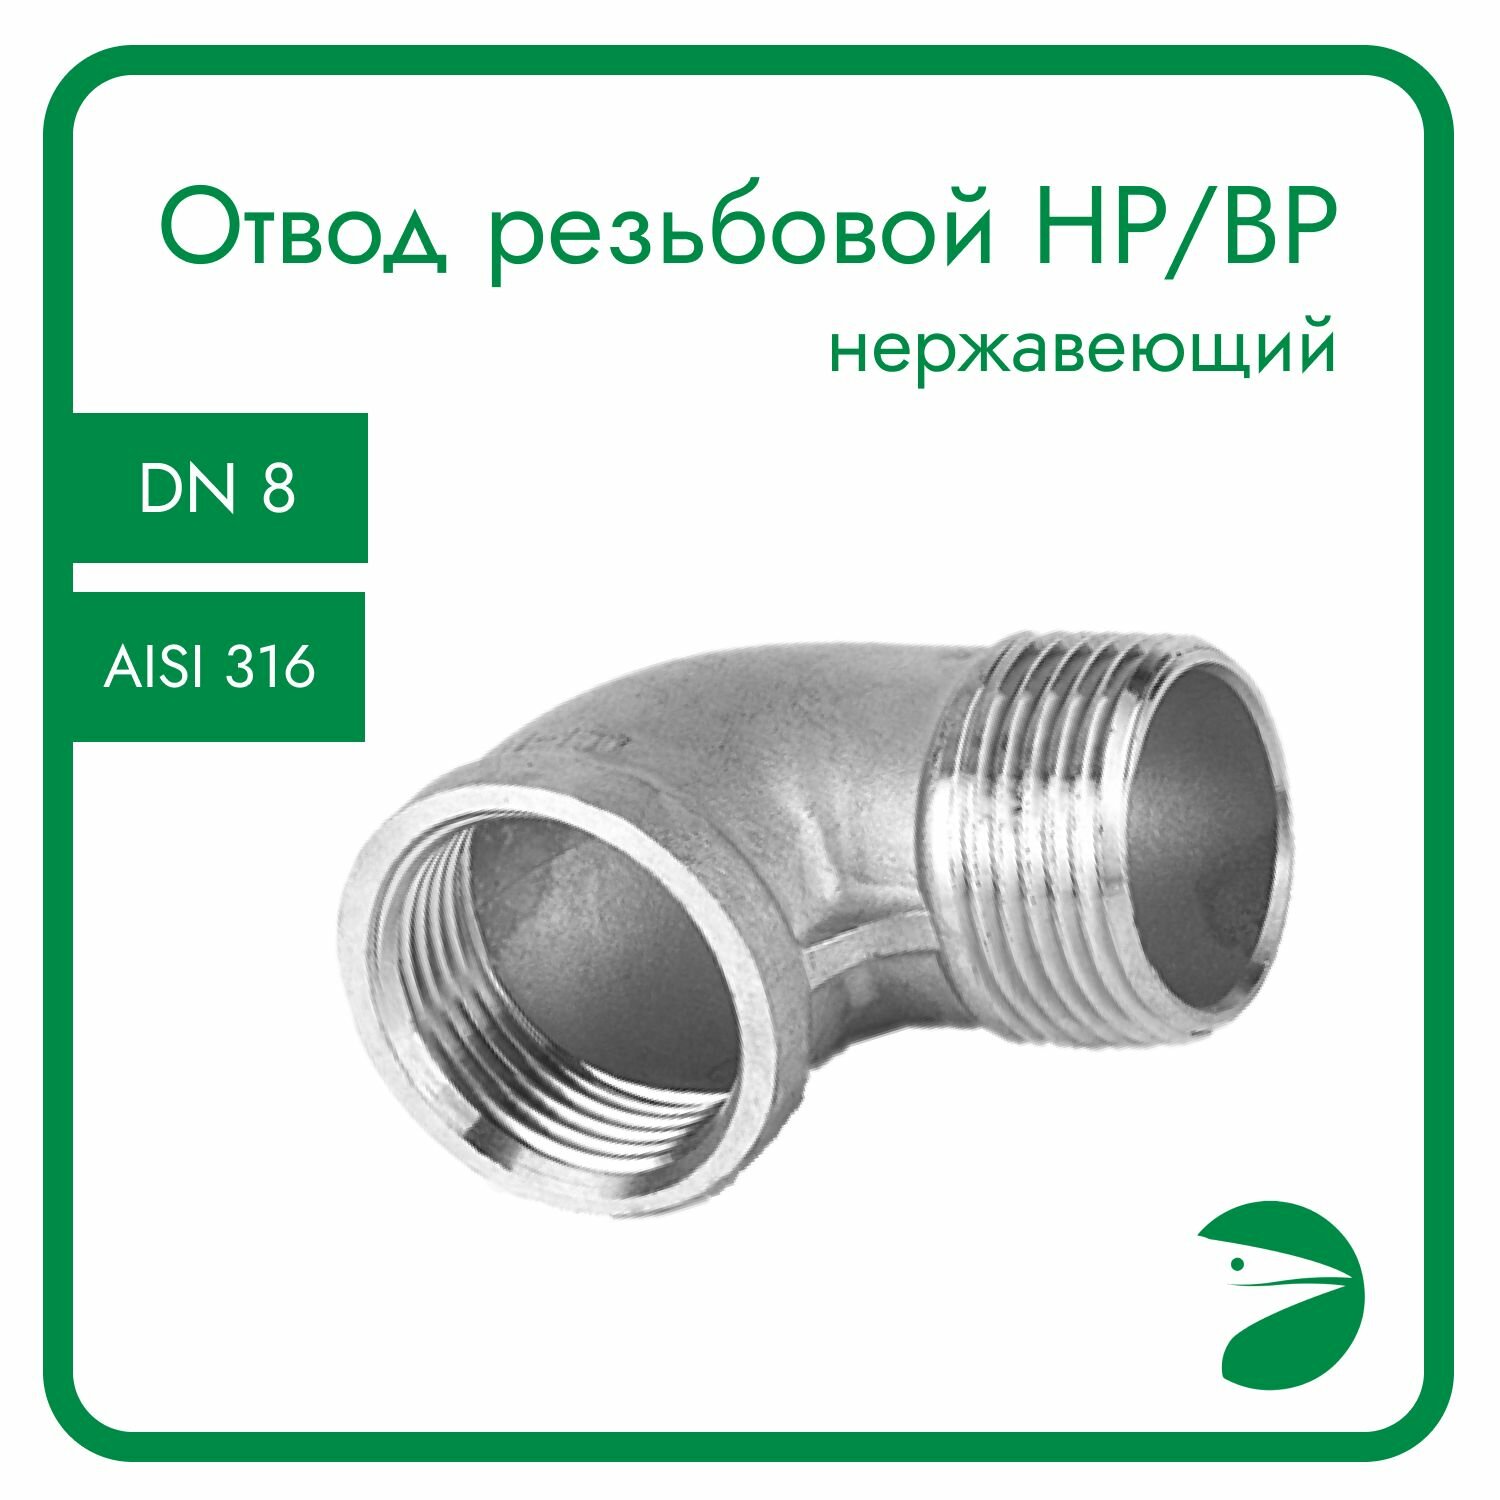 Отвод резьбовой вр/нр нержавеющий, AISI316 DN 8 (1/4"), (CF8M), PN16